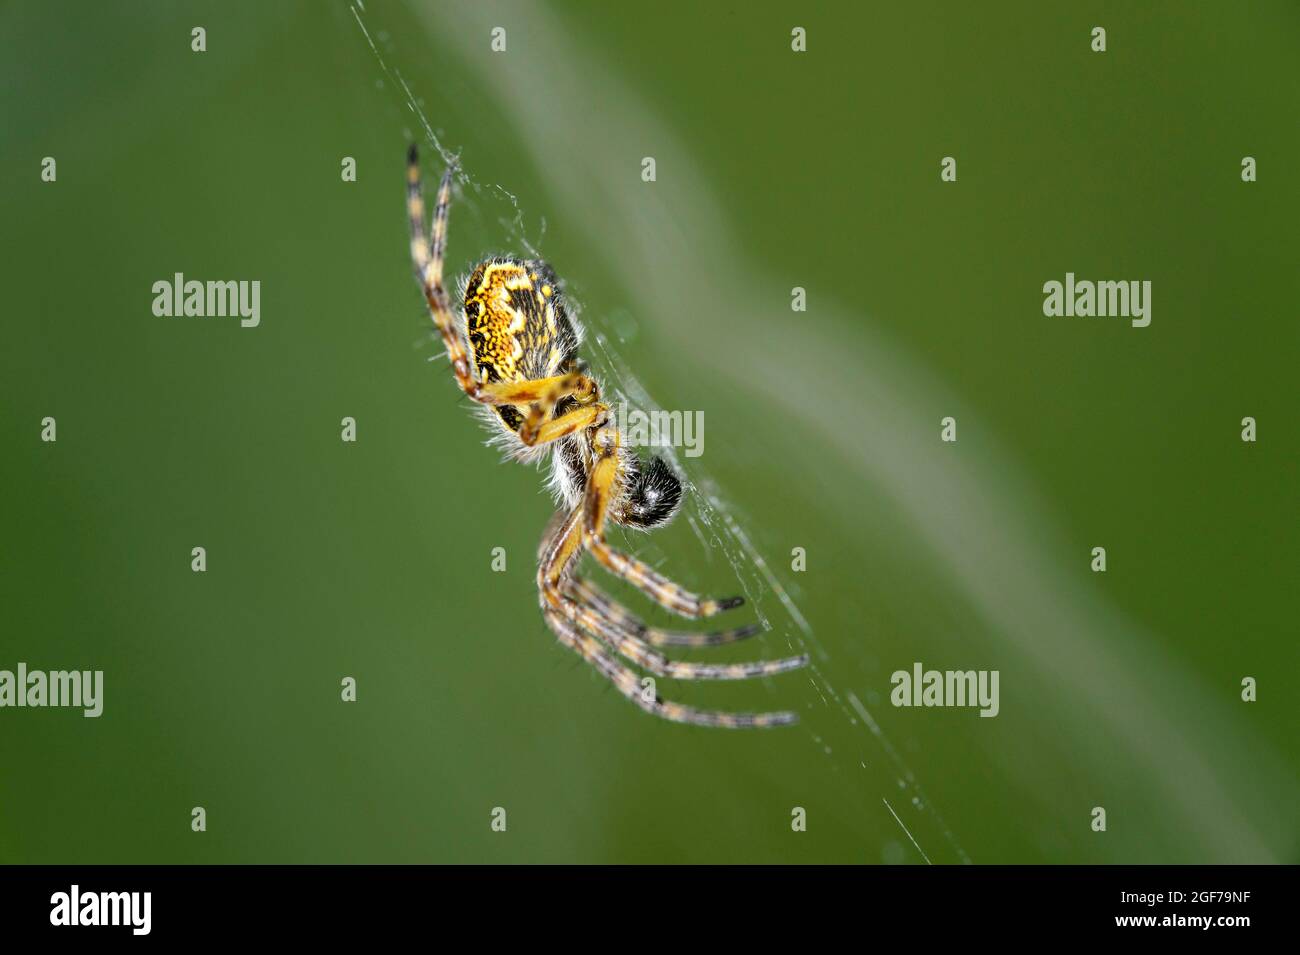 Oak spider (Aculepeira ceropegia), Valais, Switzerland Stock Photo